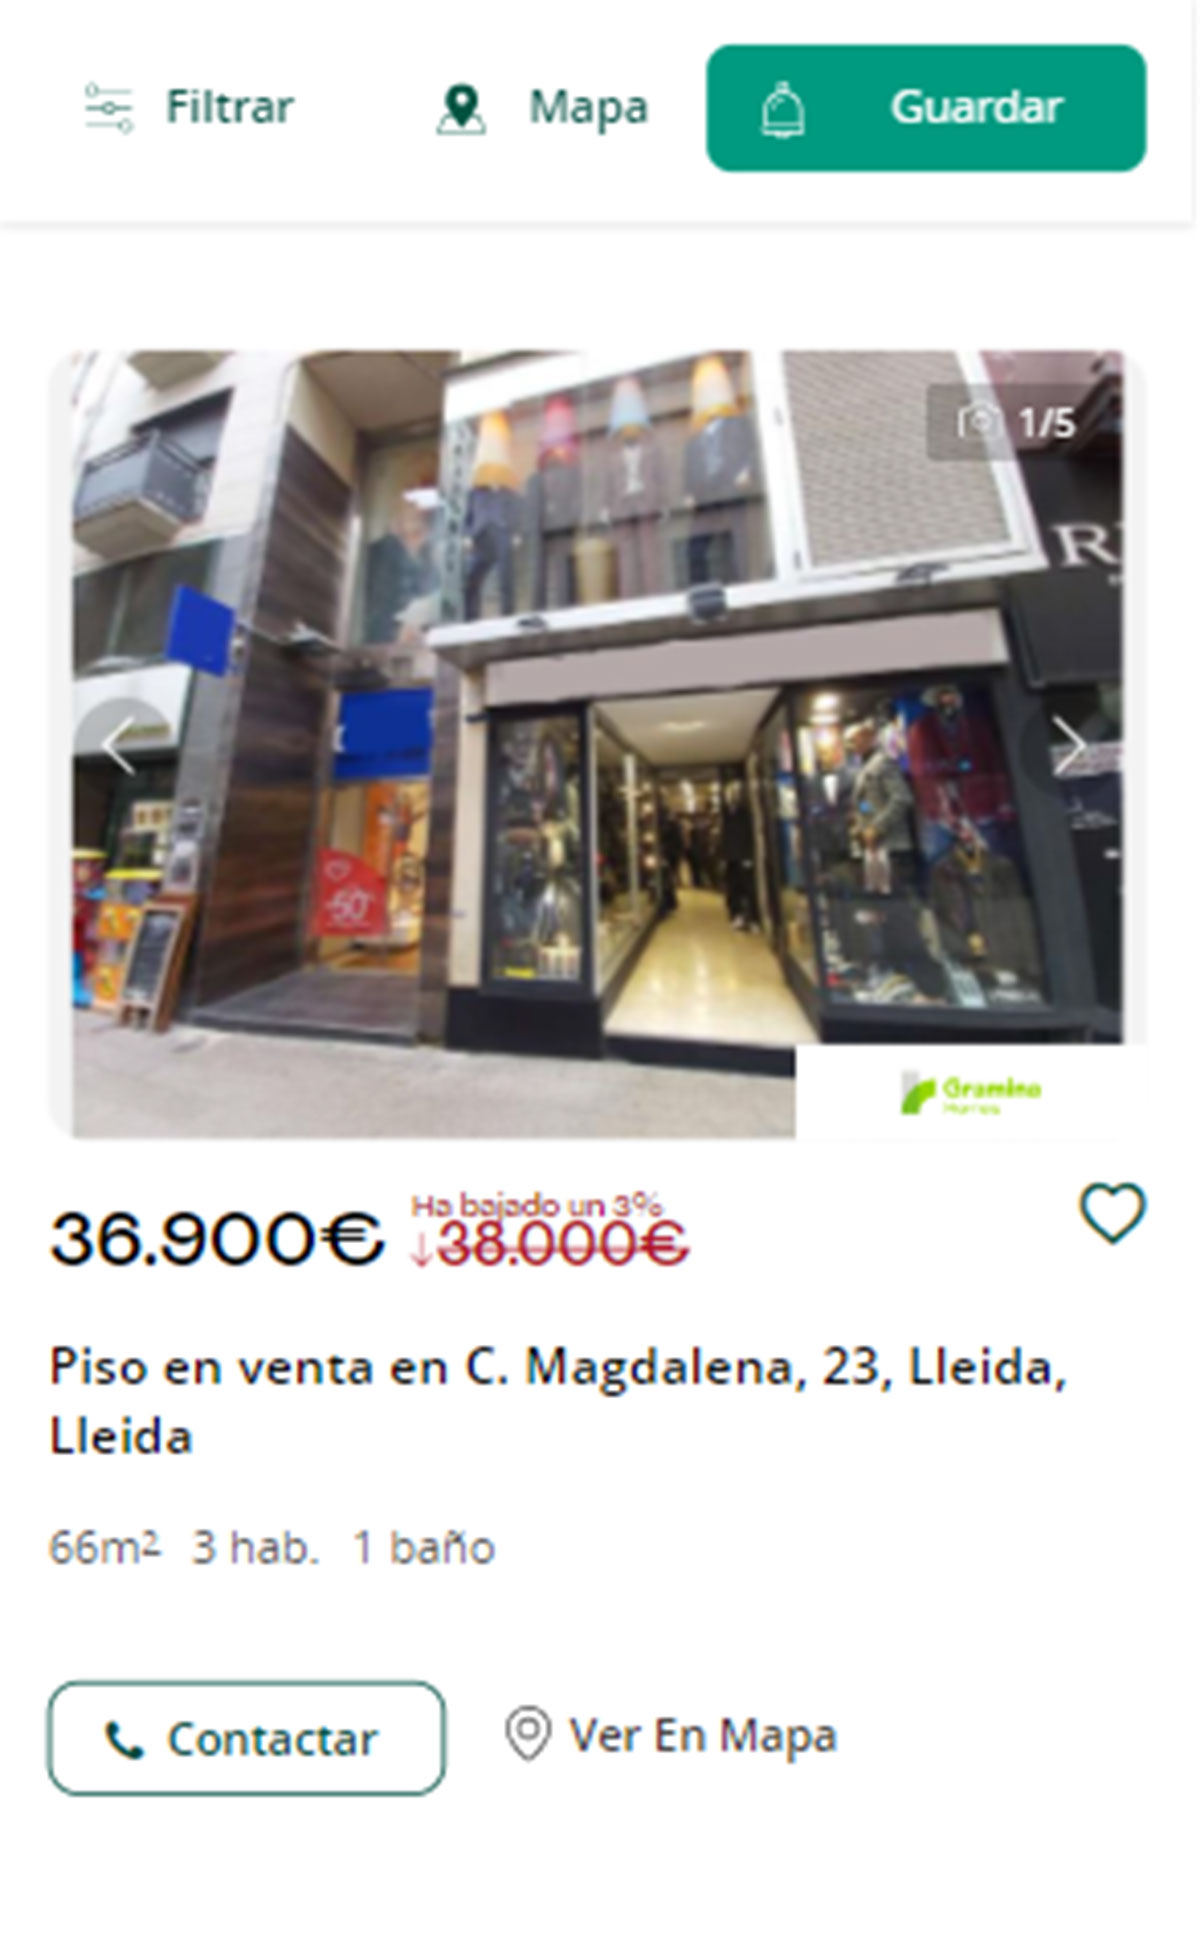 Piso en Lleida por 36.900 euros